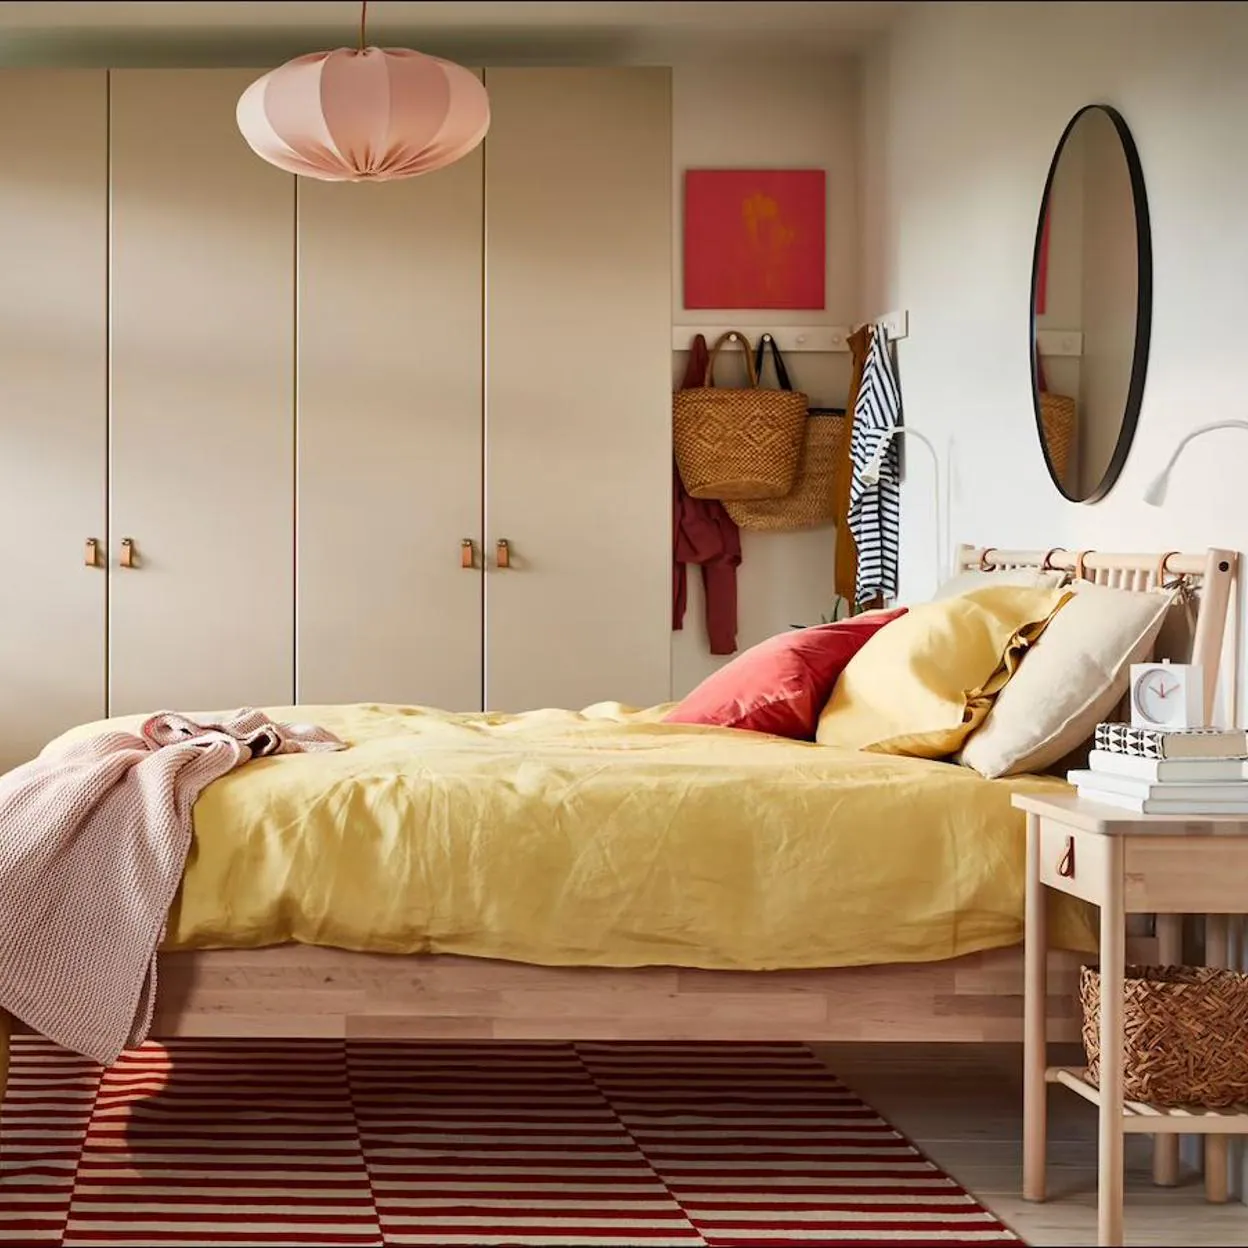 inquilino Enciclopedia Ru Los muebles, adornos y ropa de cama más bonitos y baratos de IKEA para  decorar un dormitorio completo por poco dinero | Mujer Hoy